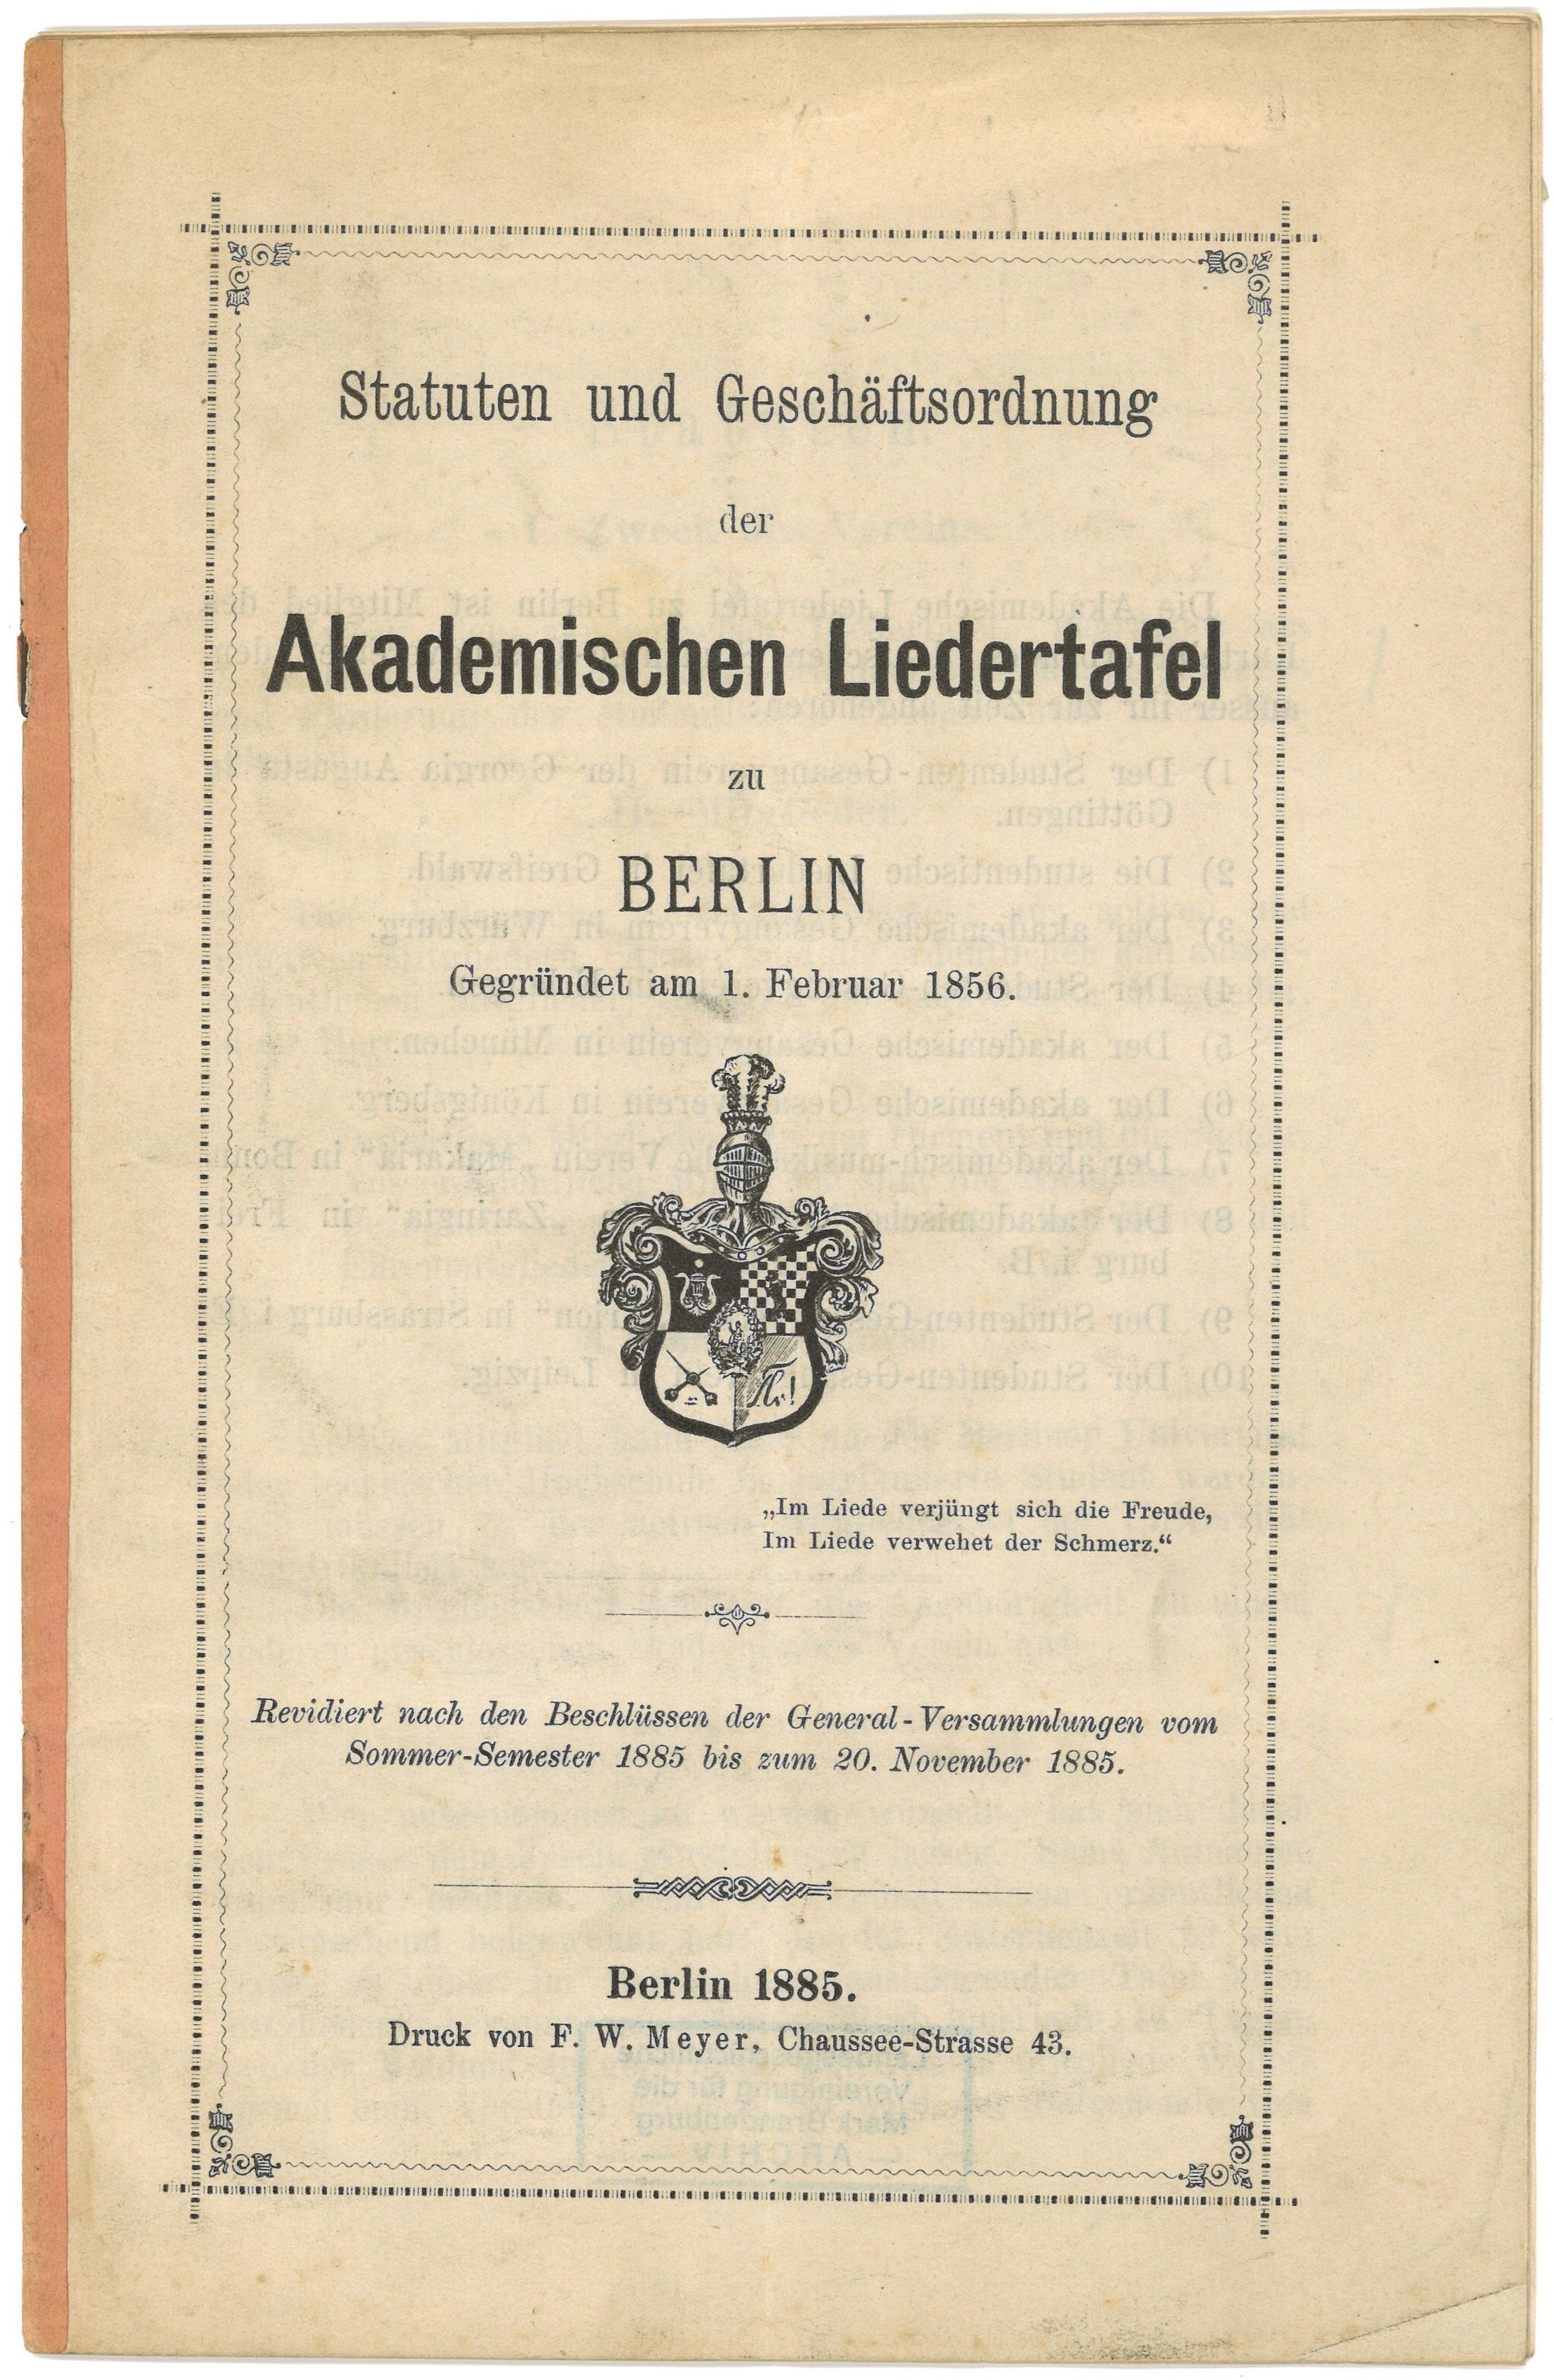 Statuten und Geschäftsordnung der Akademischen Liedertafel zu Berlin (1878) (Landesgeschichtliche Vereinigung für die Mark Brandenburg e.V., Archiv CC BY)